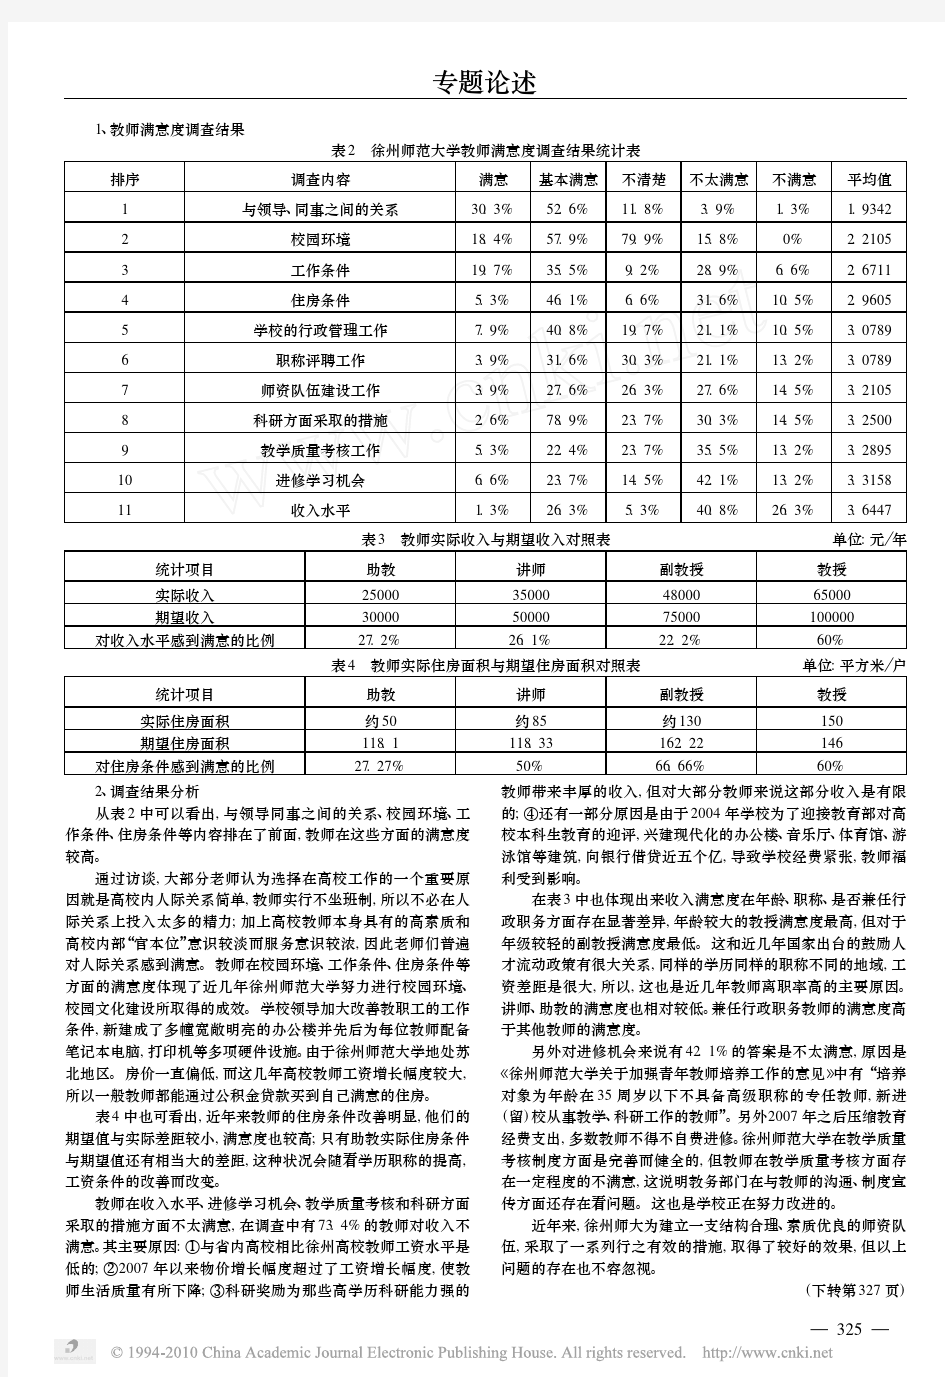 高校教师工作满意度调查分析_以徐州师范大学为例